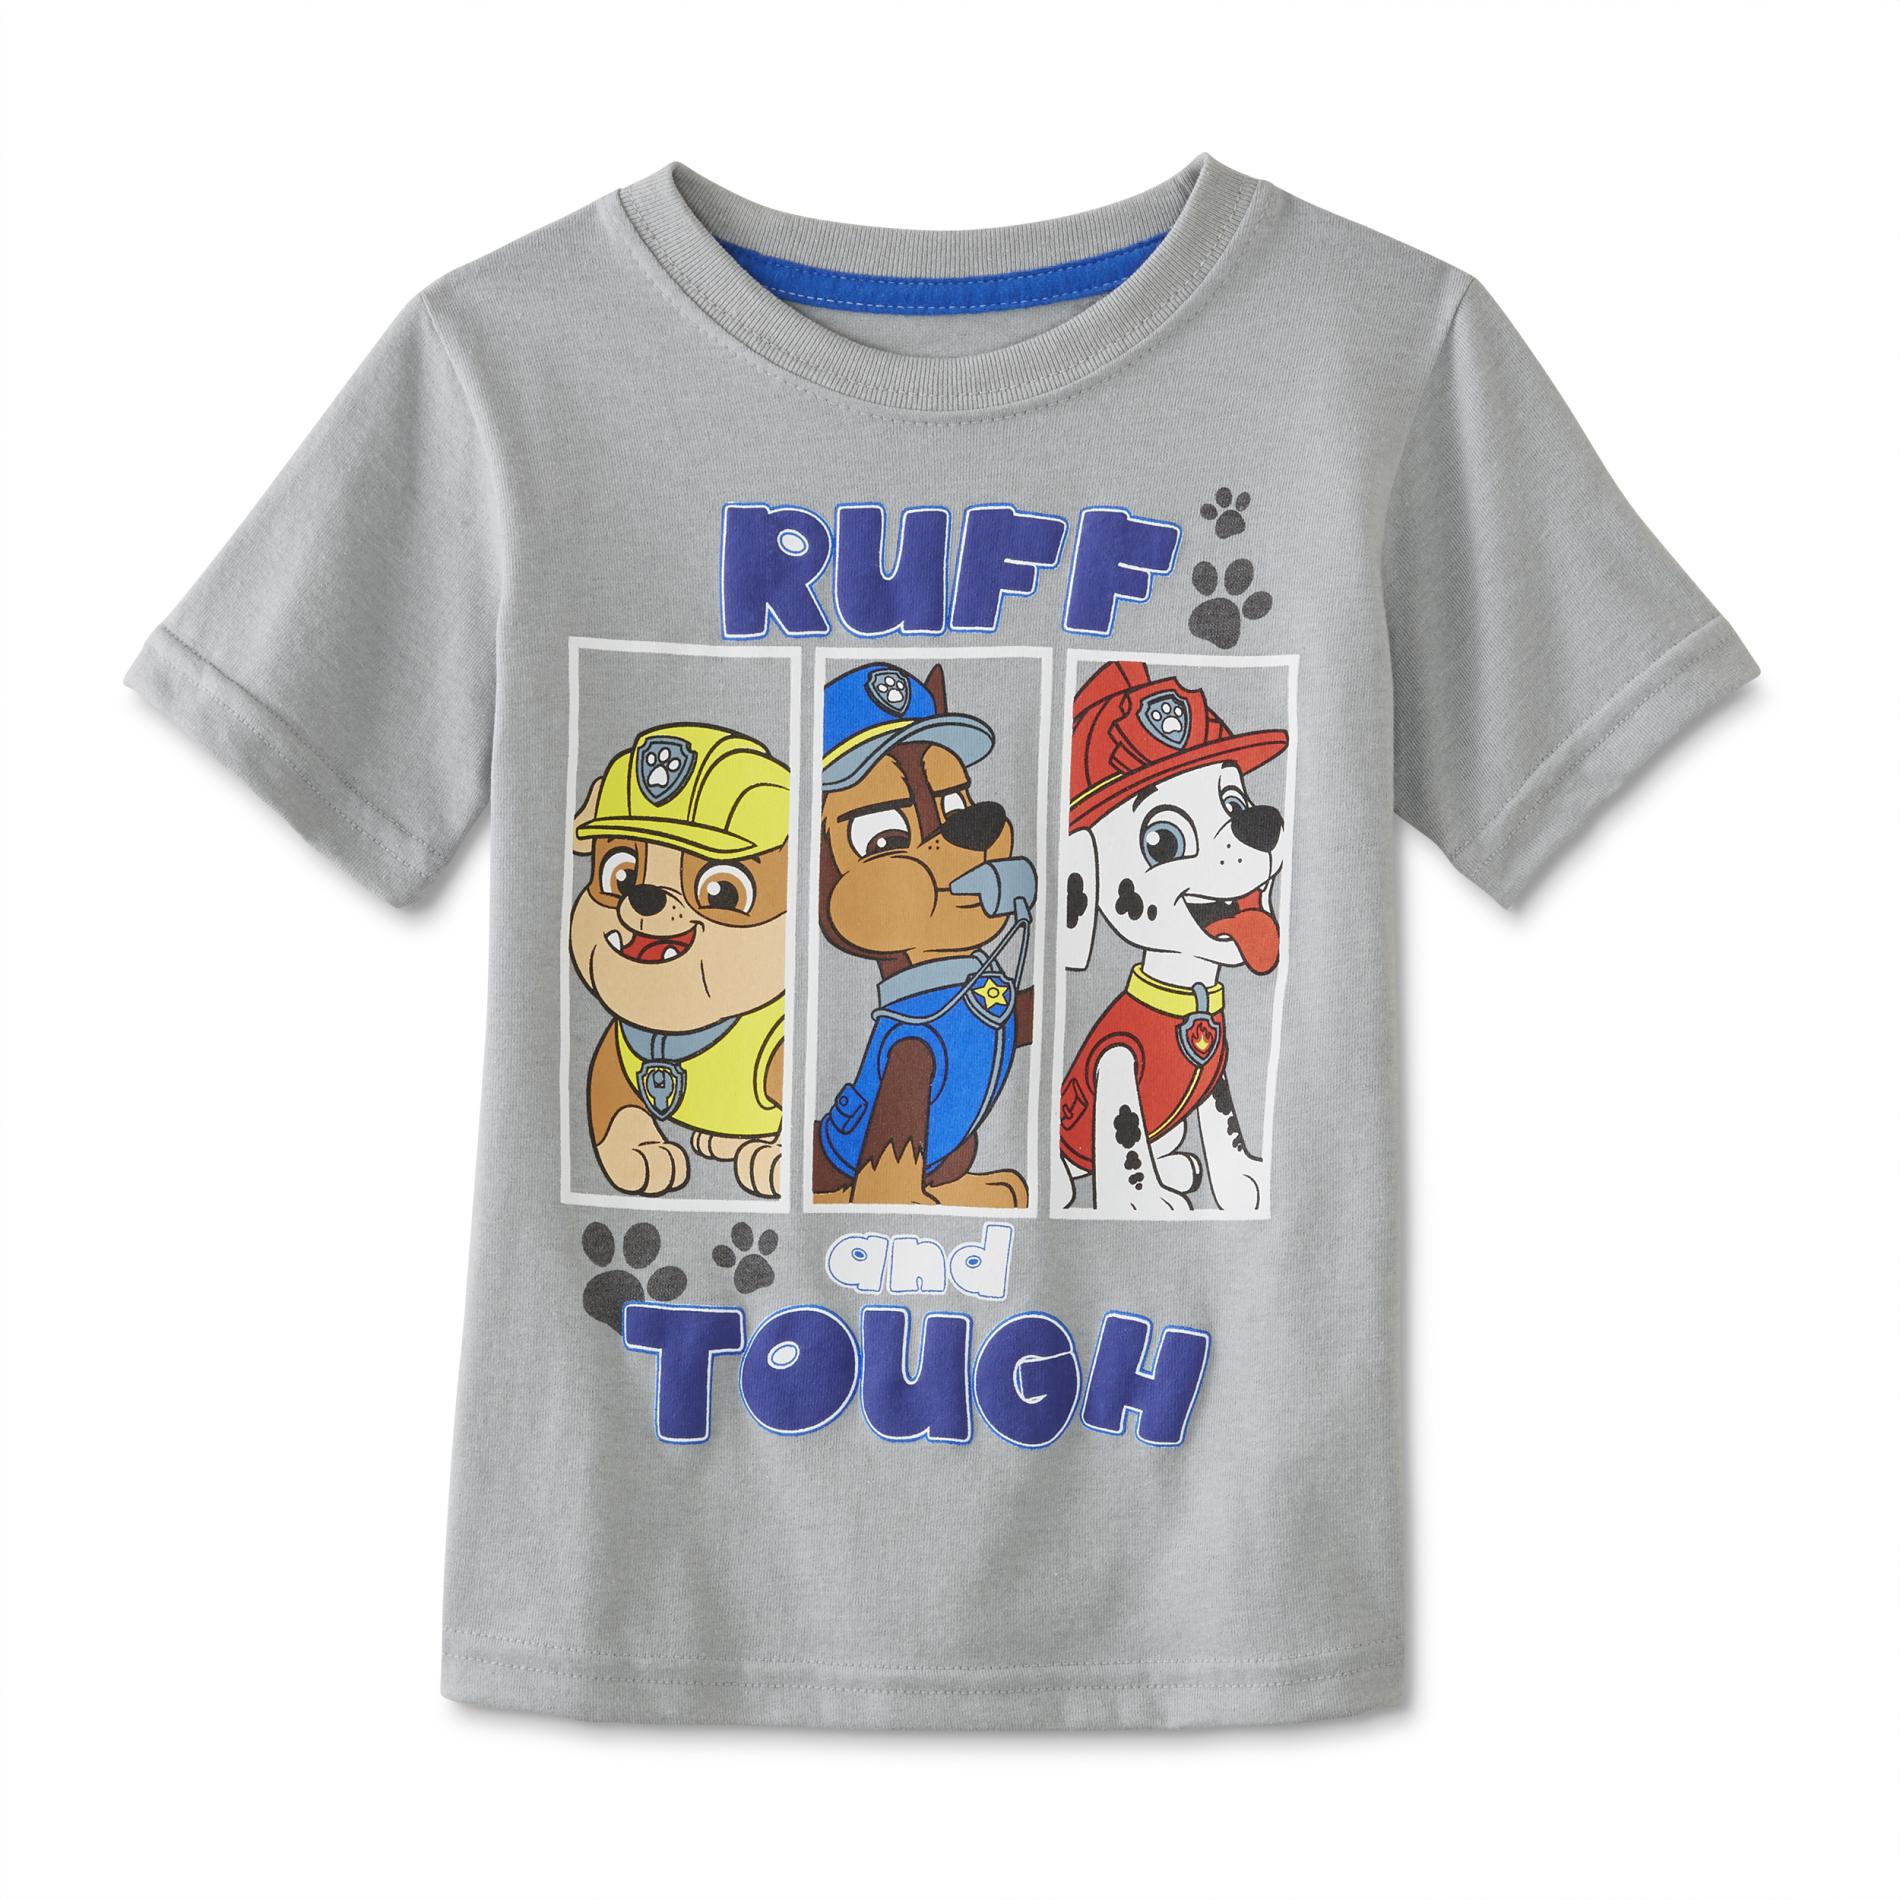 Nickelodeon PAW Patrol Infant & Toddler Boys' Graphic T-Shirt - Ruff & Tough